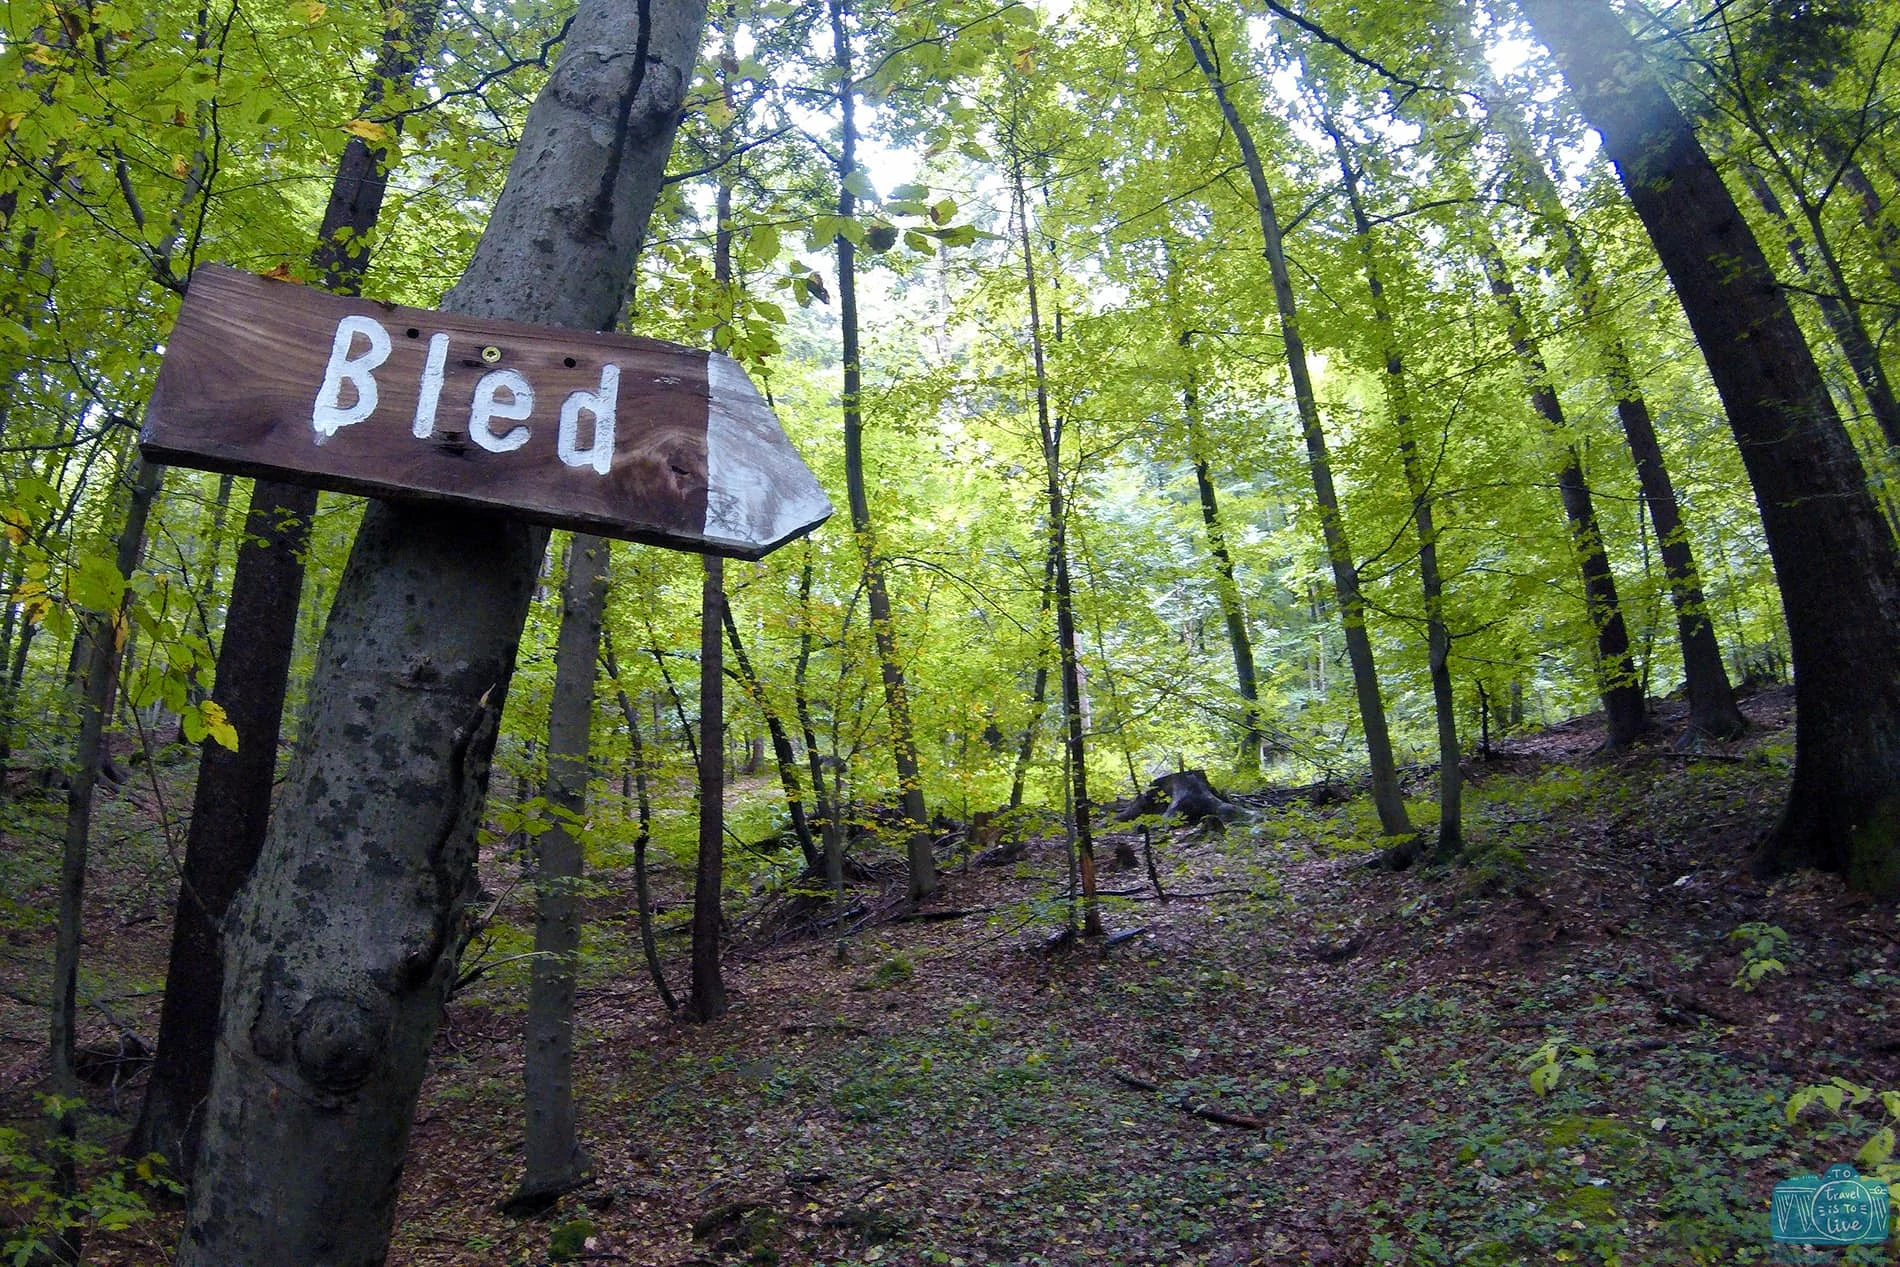 Percurso pedestre até Bled